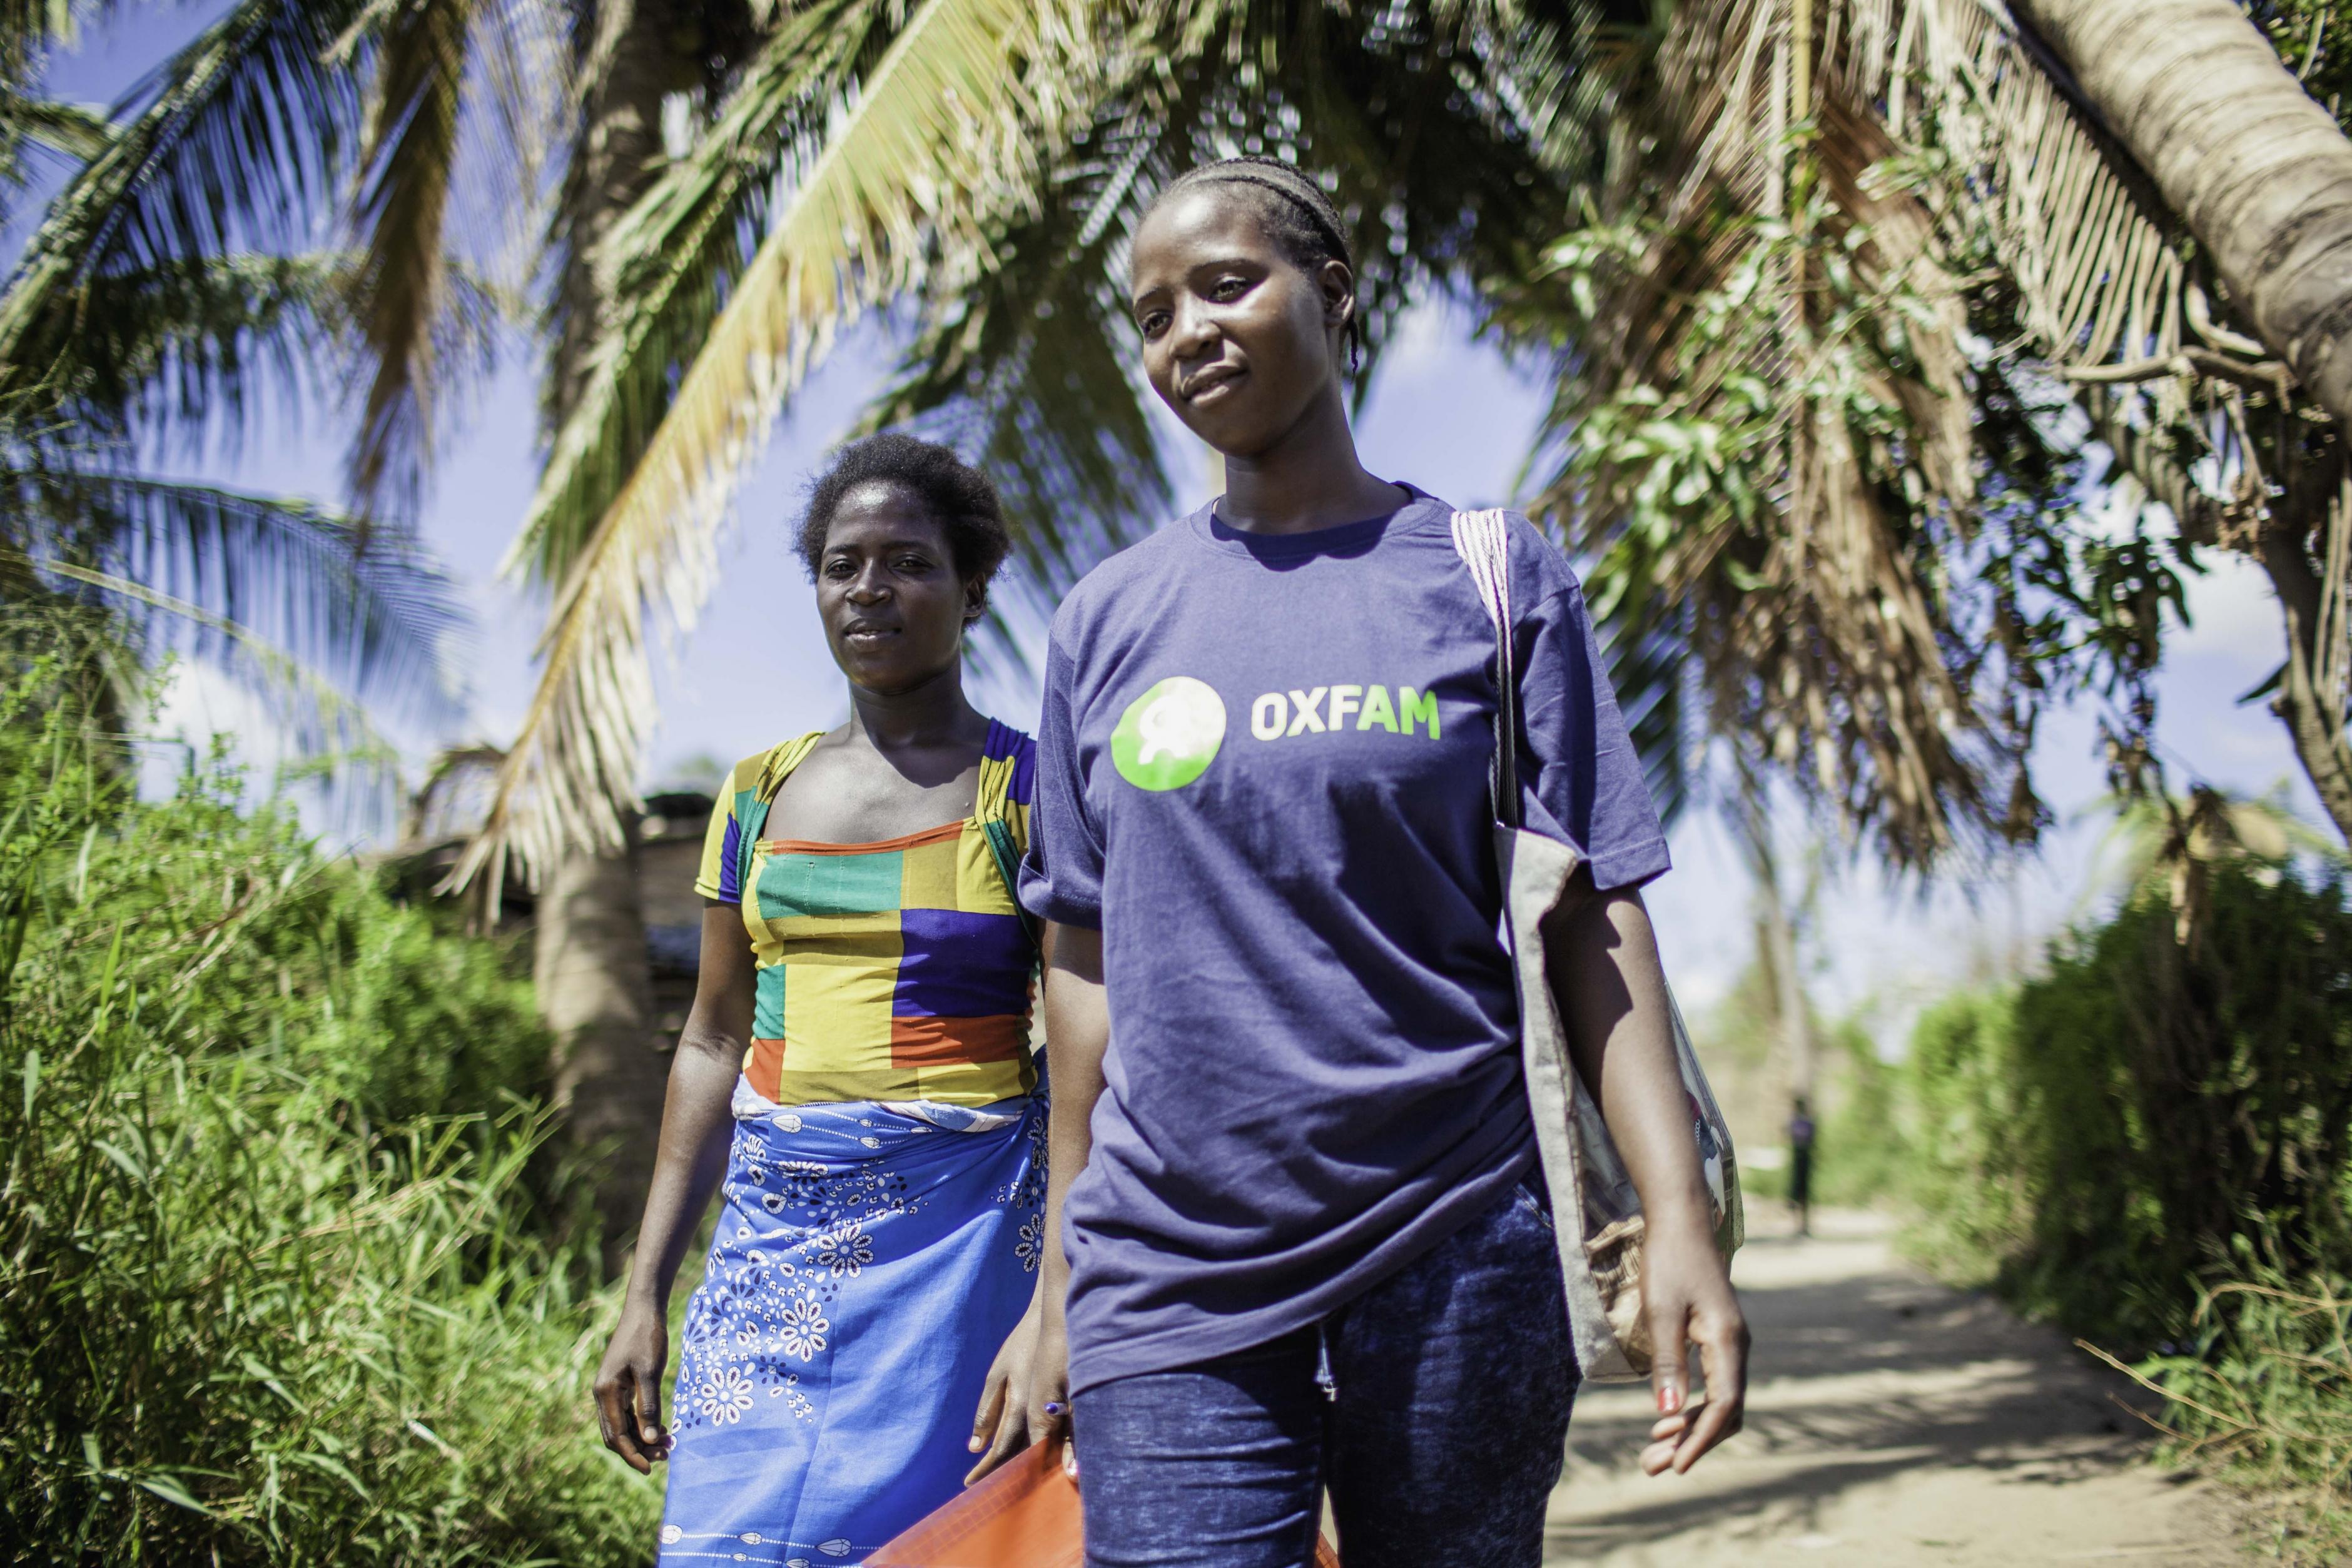 Zwei Frauen gehen unter einer Palme, eine trägt ein Oxfam-T-Shirt